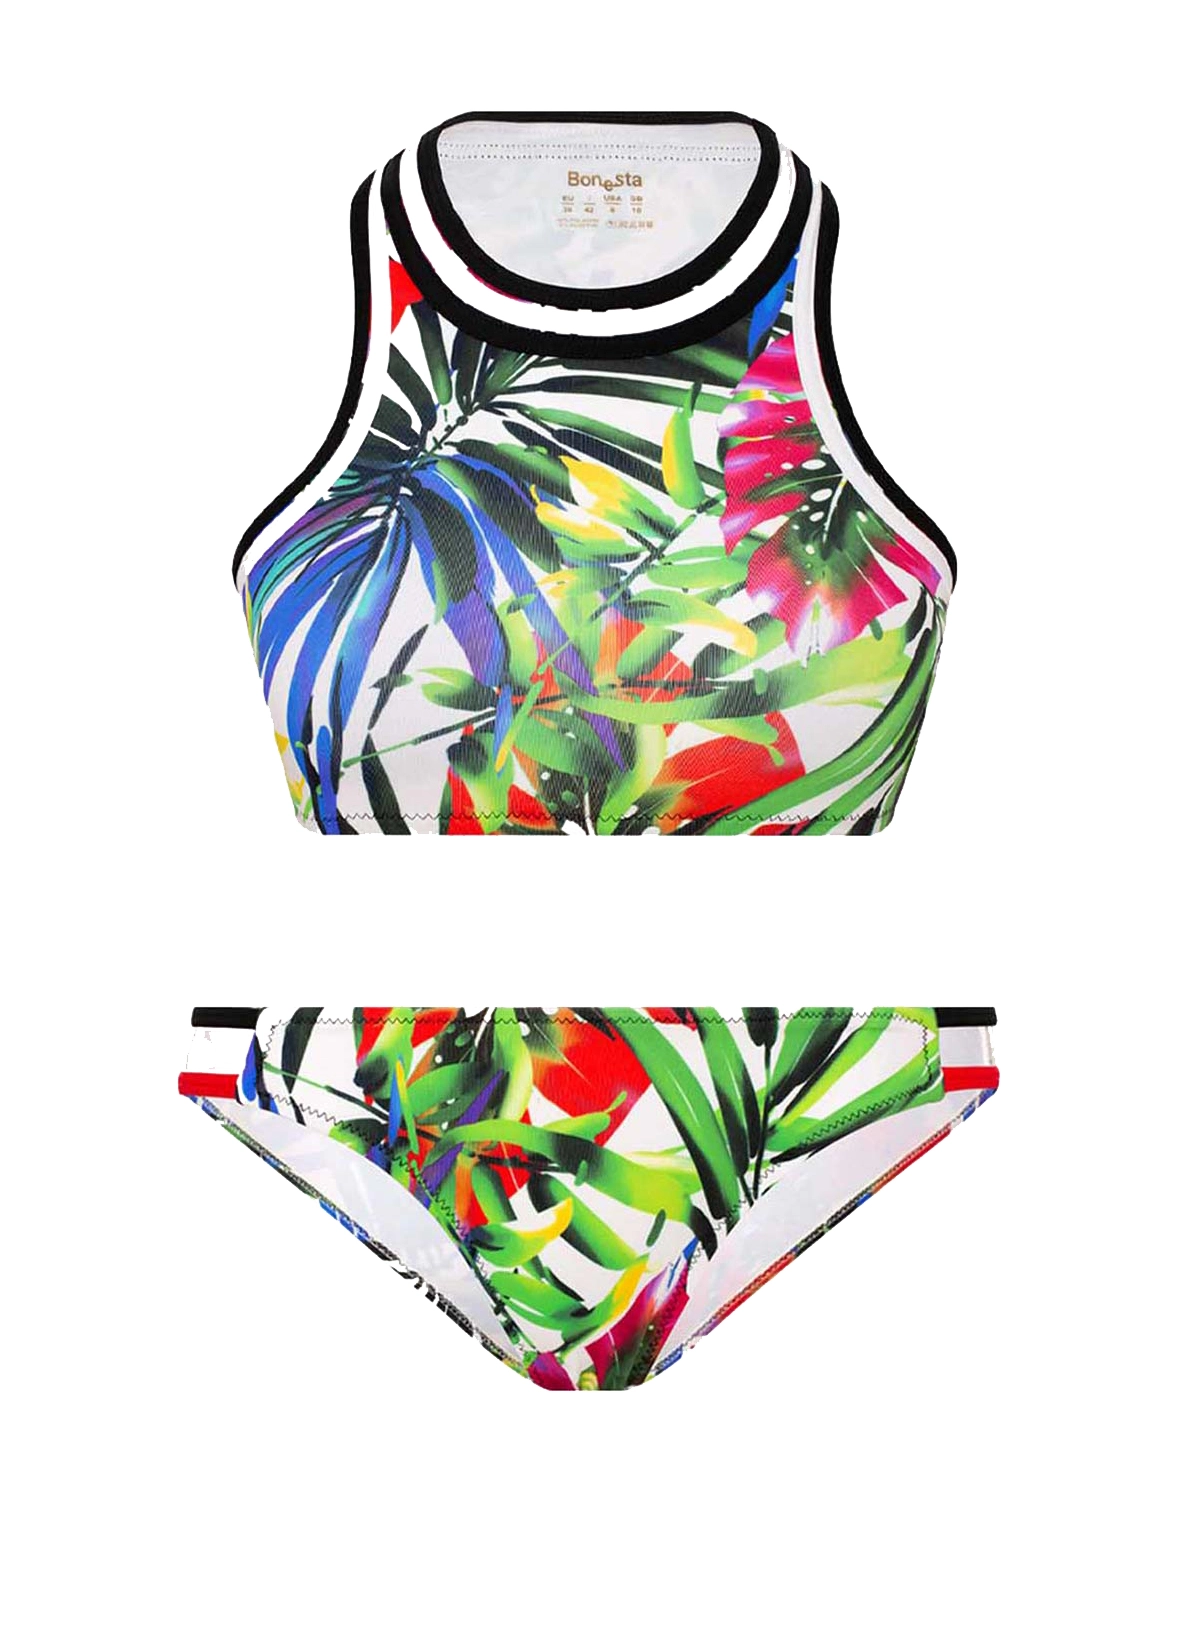 Renkli Yaprak Desenli Atlet Bikini Takımı